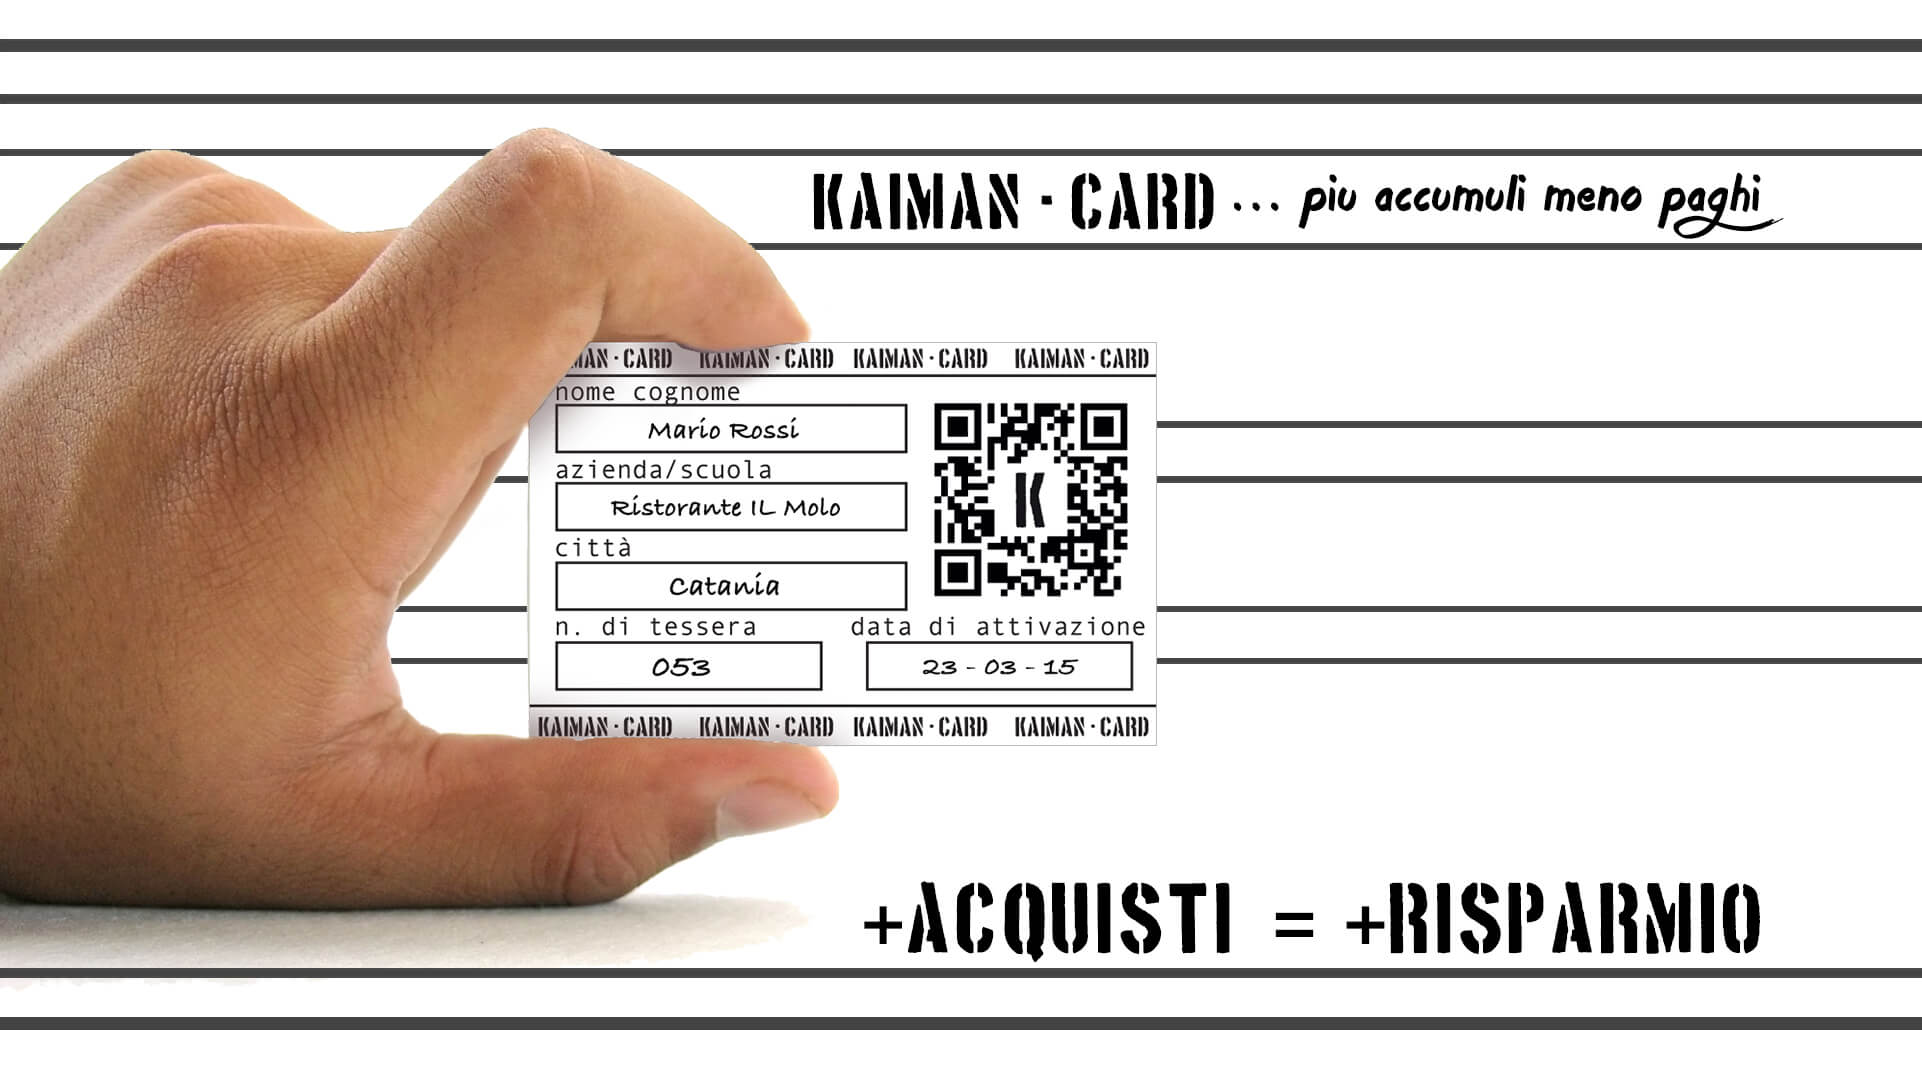 kaiman card